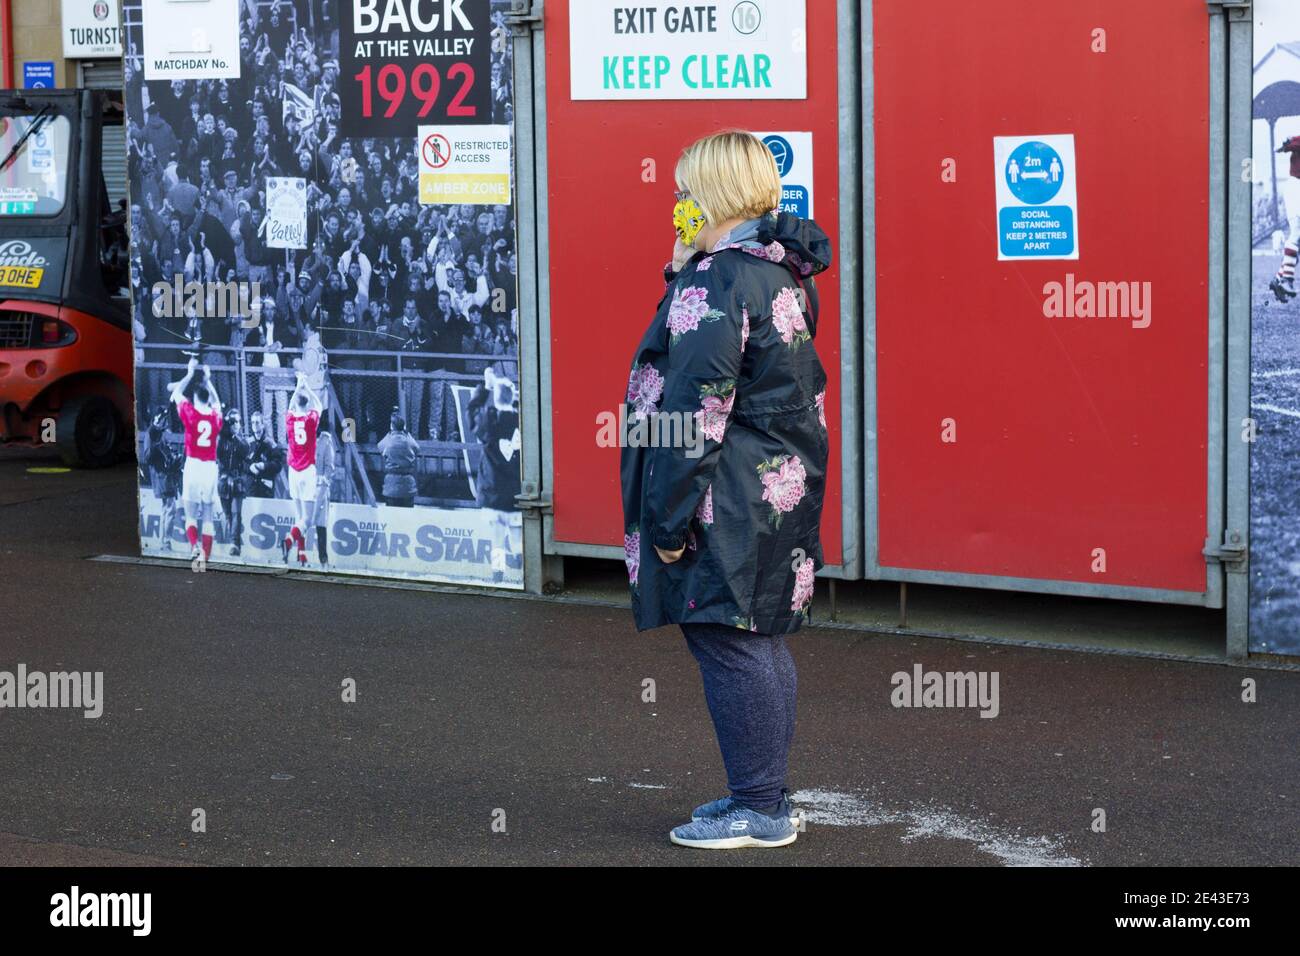 Maschera facciale indossando donne in attesa di coda per il vaccino covid-19, nello stadio Valley, Charlton, Londra, Inghilterra Foto Stock